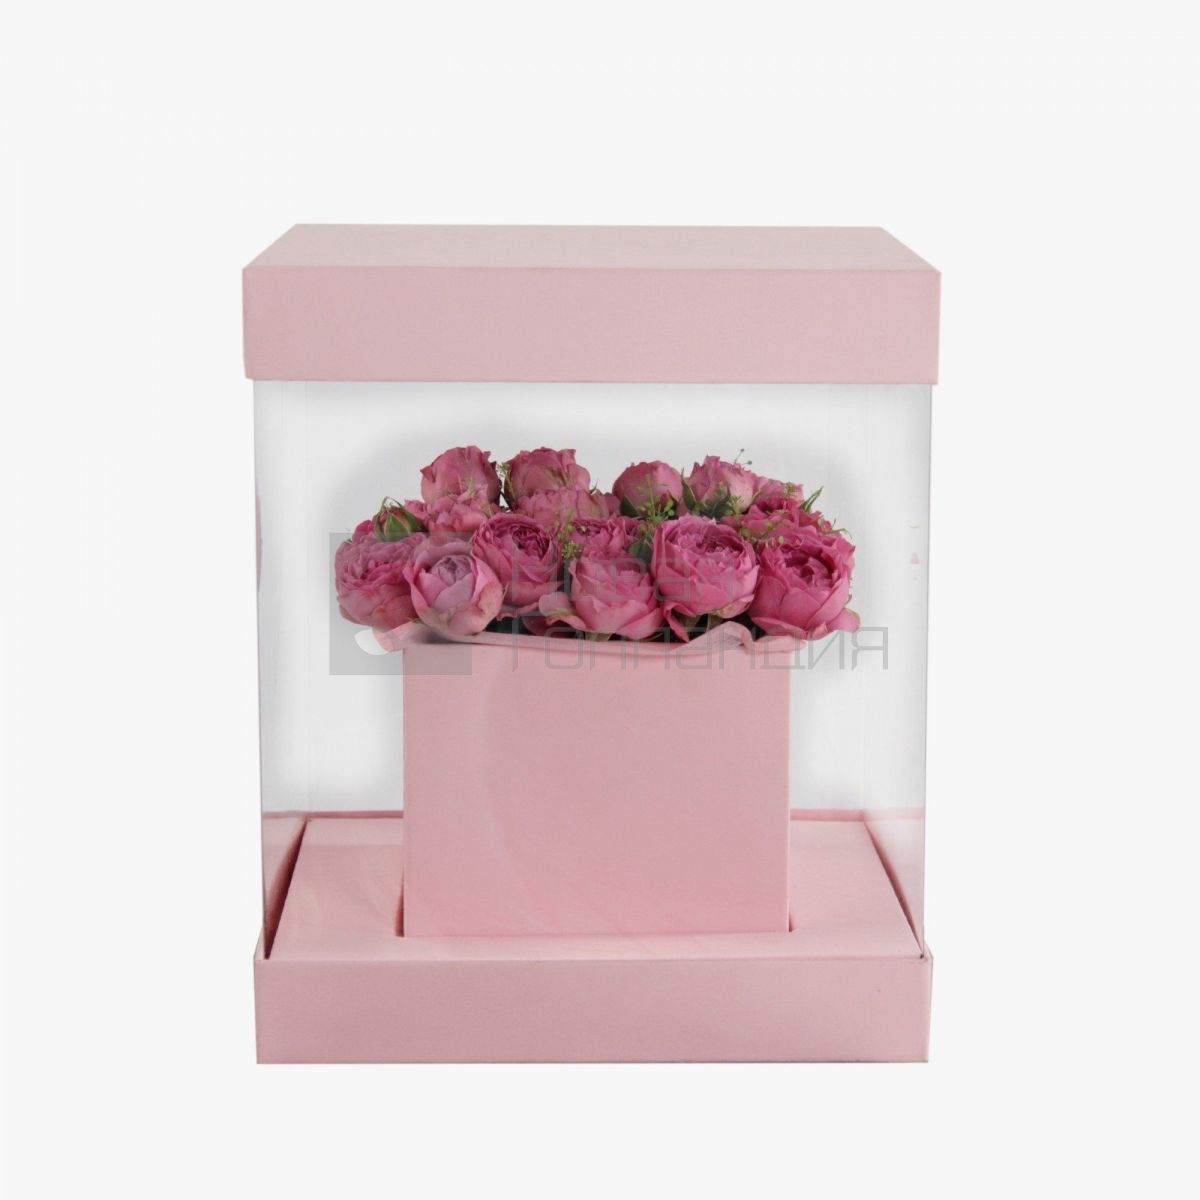 Китайская шкатулка с розовой кустовой пионовидной розой